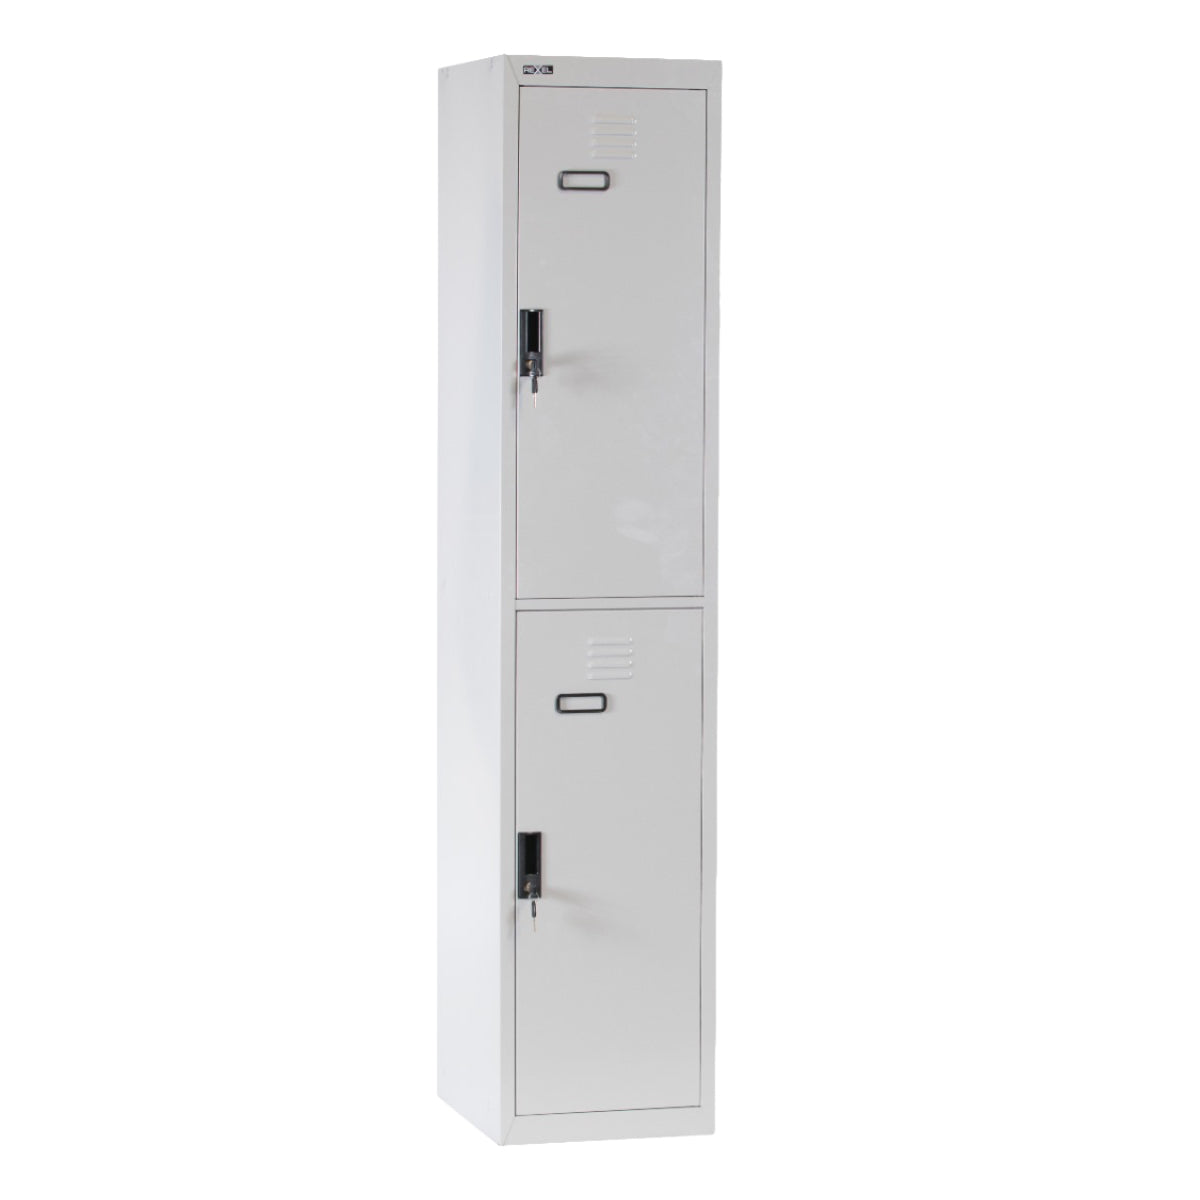 Rexel Locker, 180x37.5x46 cm, 2 Door, Grey